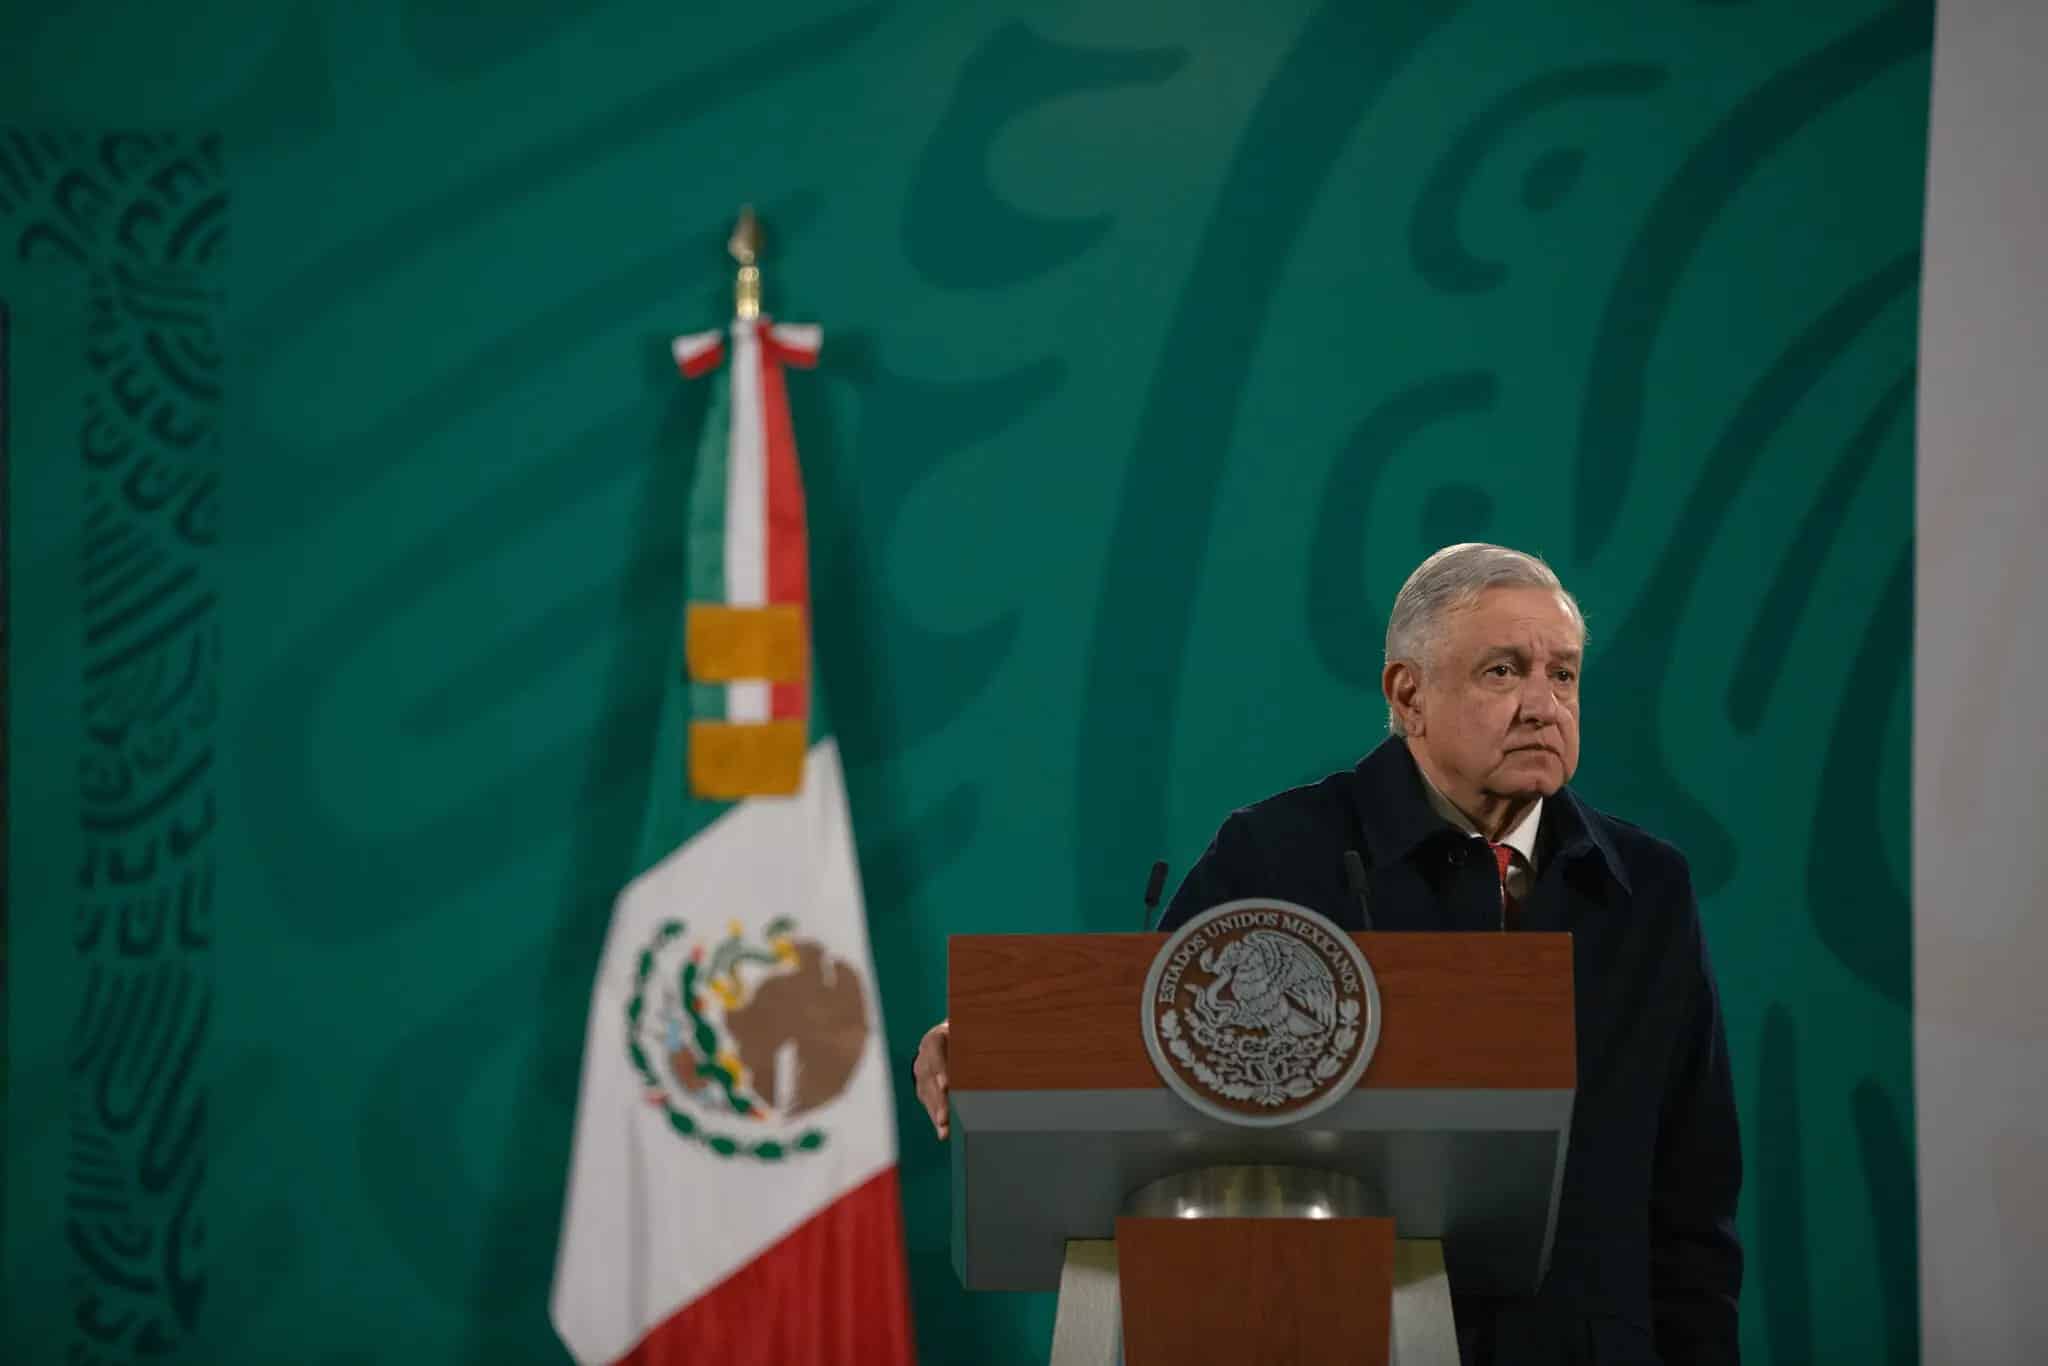 El presidente de México, Andrés Manuel López Obrador, quien llegó al cargo en 2018, prometió detener las prácticas de espionaje del pasado, a las que calificó de “ilegales”. Credit...Luis Antonio Rojas para The New York Times